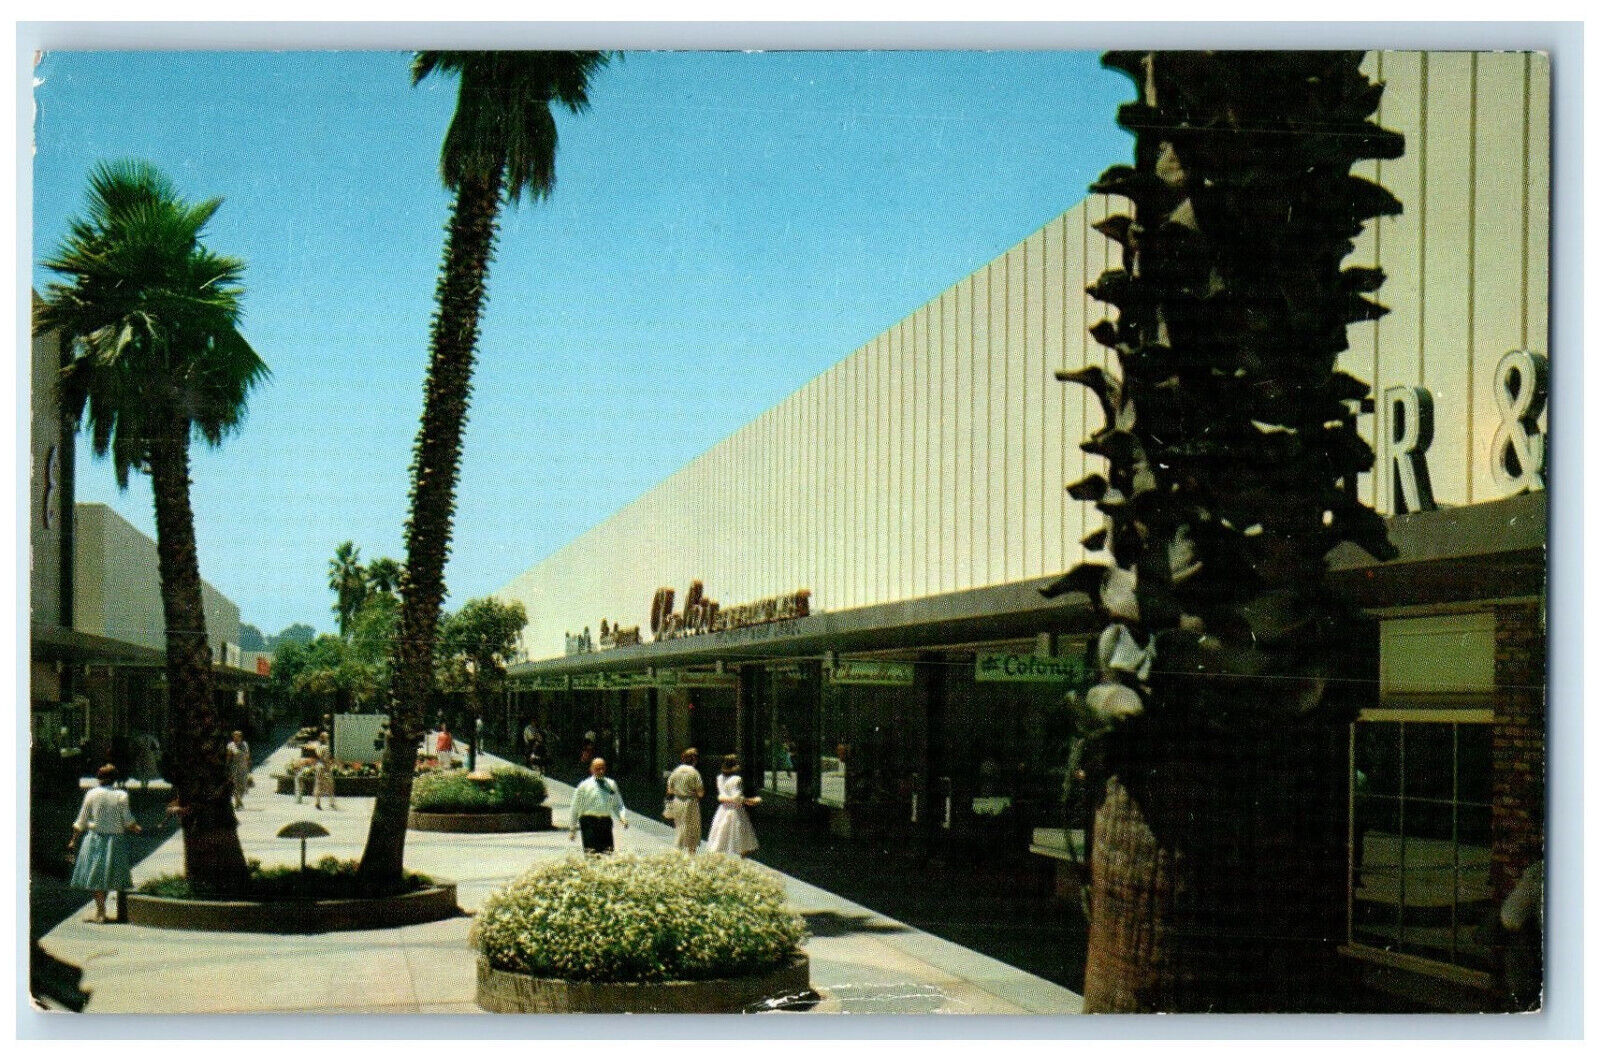 1960 Stanford Shopping Center Palo Alto Menlo Park California CA Postcard